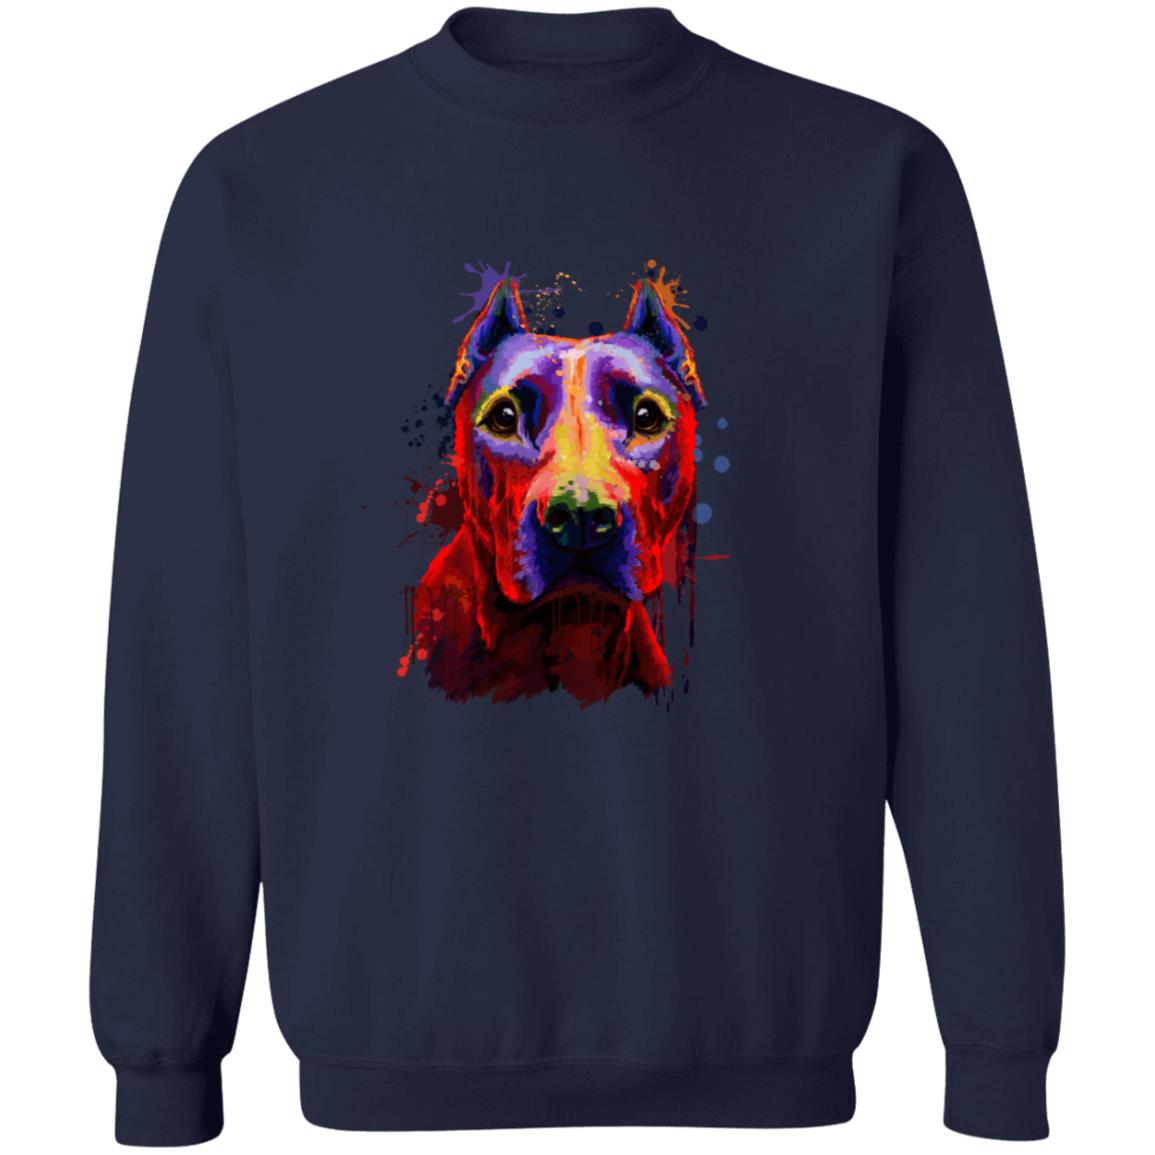 Abstract Pitbul dog Unisex Crewneck Sweatshirt with expressive splashes-Family-Gift-Planet